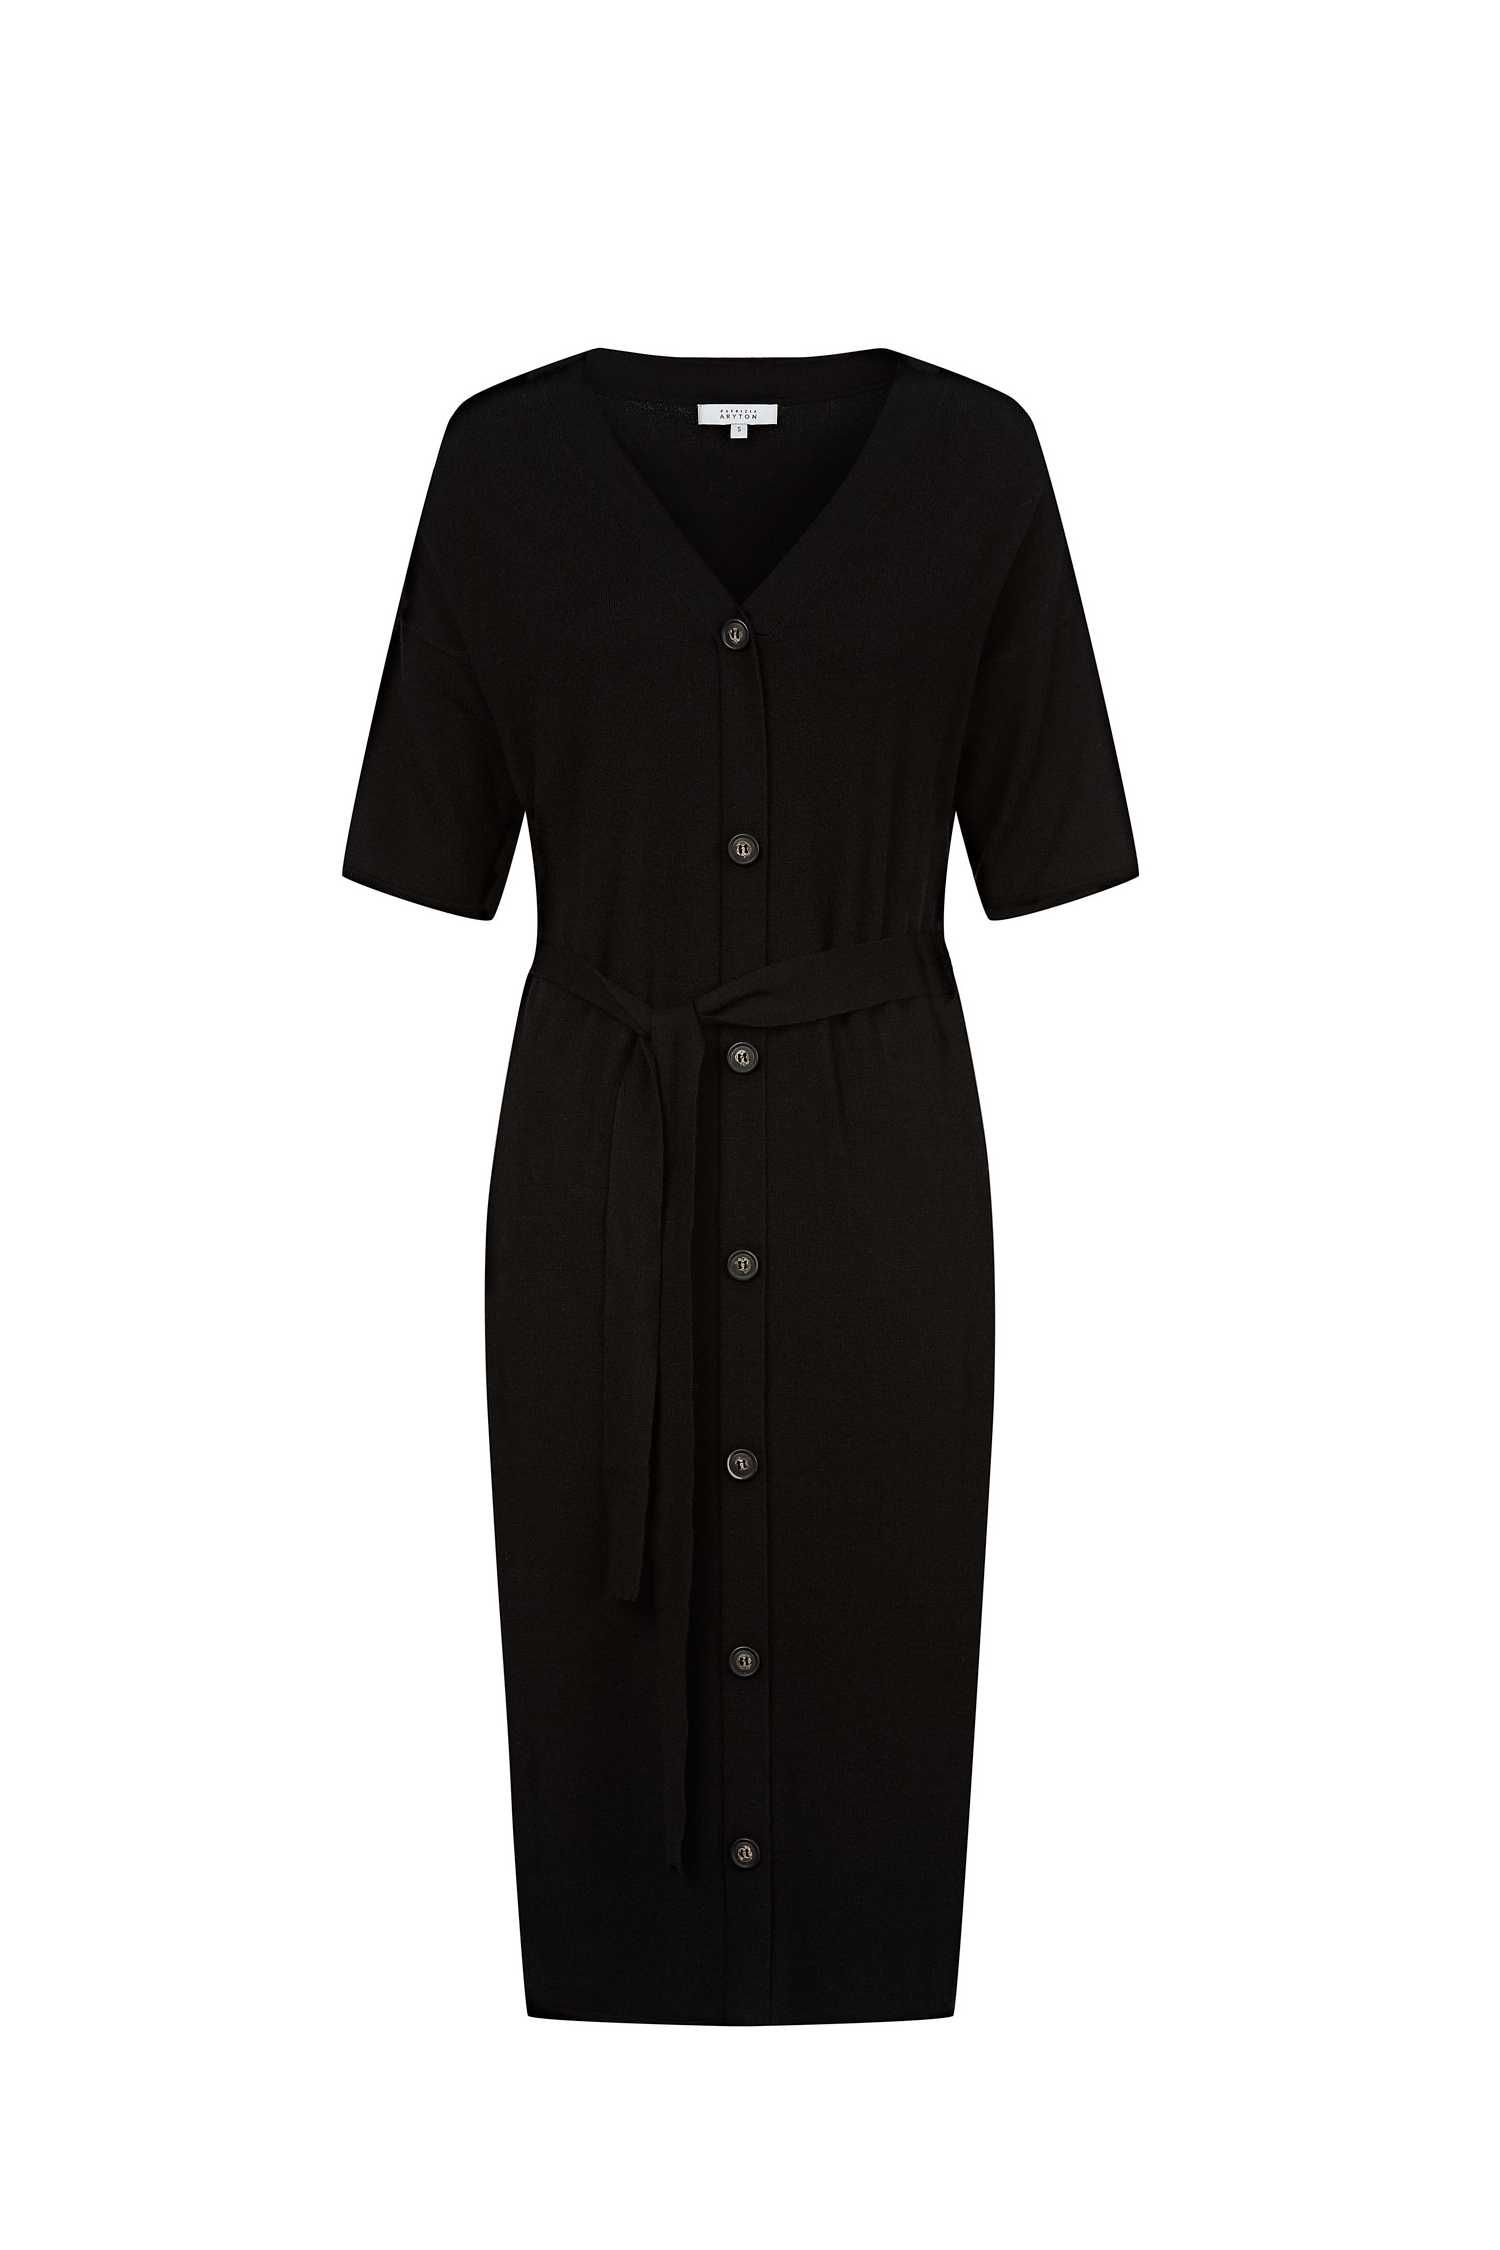 PATRIZIA ARYTON czarna dzianinowa sukienka premium XL 46/48 nowa metki